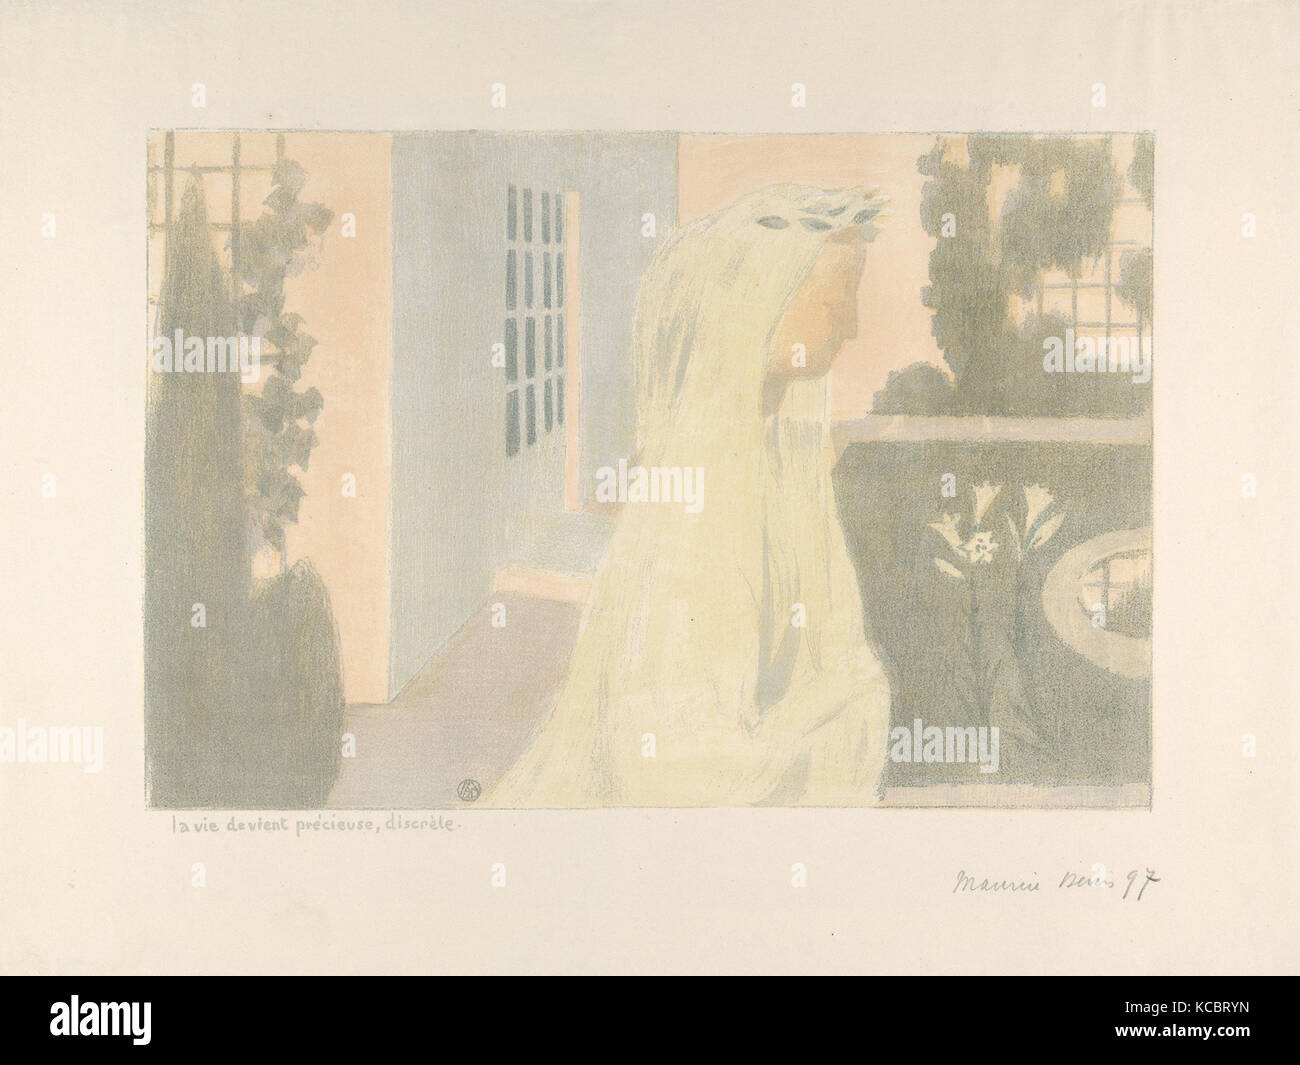 La vie devient précieuse, discrète, dall'album Amour, Maurice Denis, 1899 Foto Stock